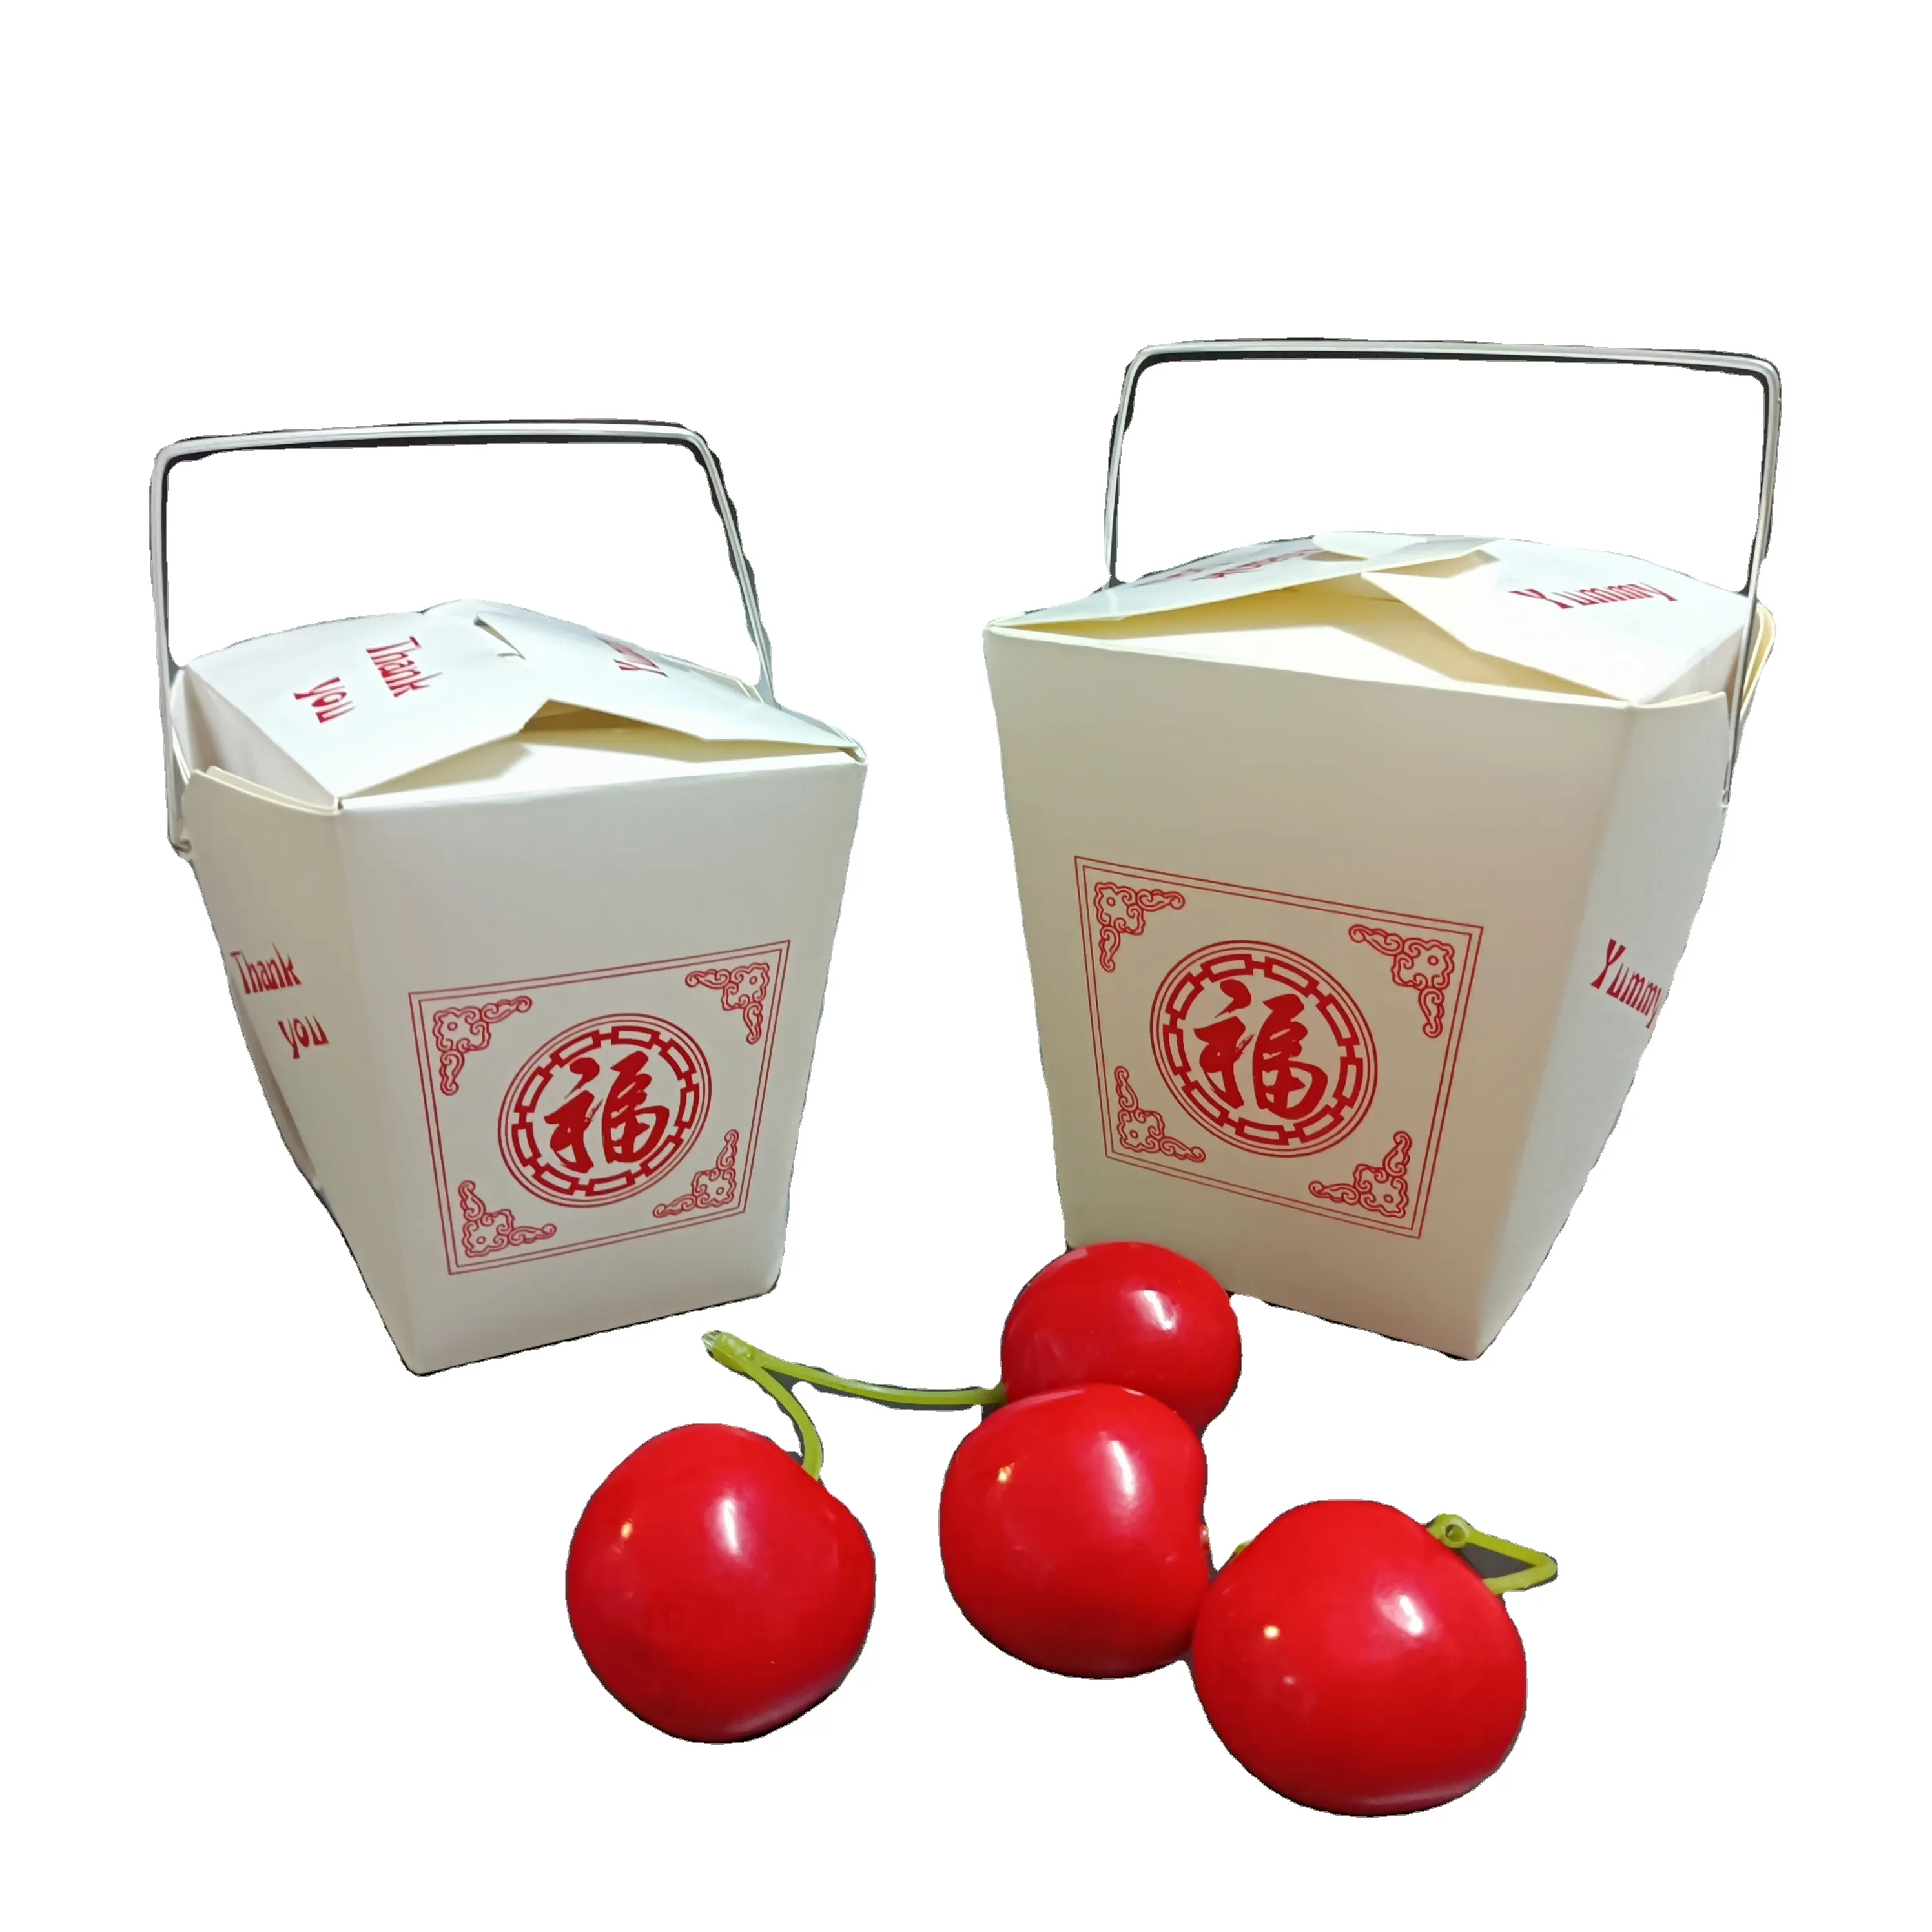 SP1597 macarrão caixa com metal alça takeway papel chinês alimentos embalagens greaseproof recipiente personalizado logotipo